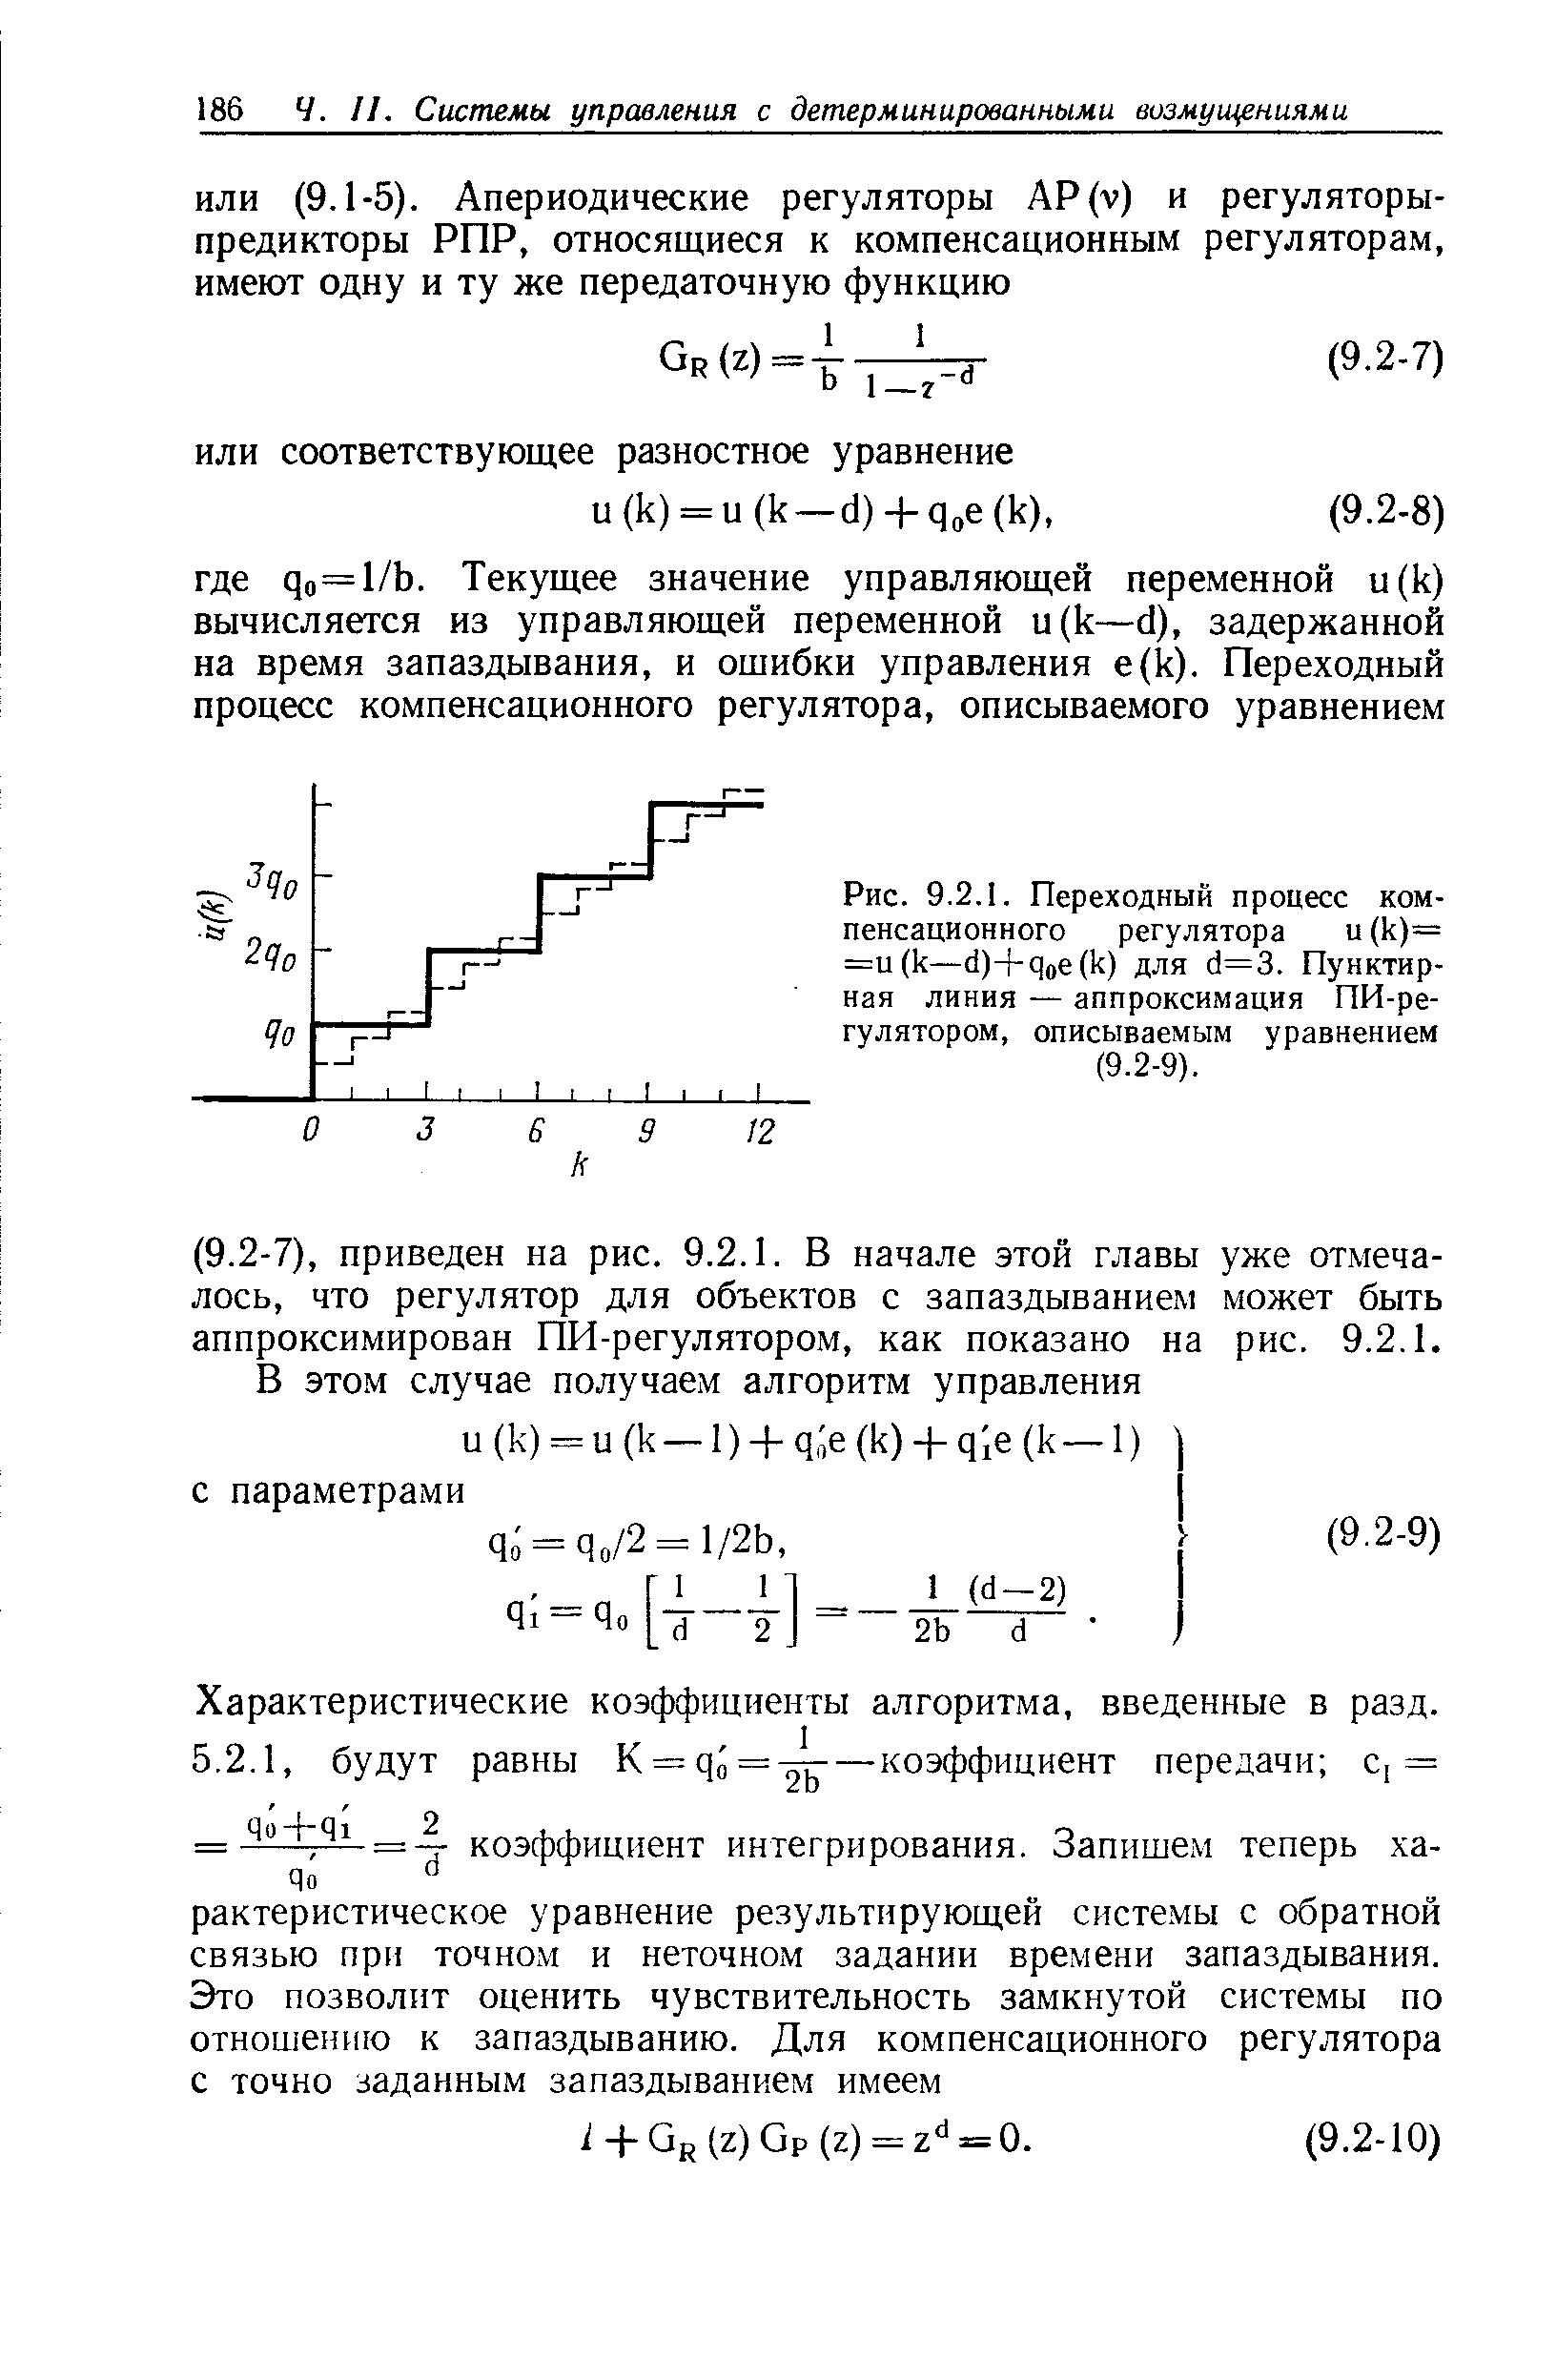 Рис. 9.2.1. Переходный процесс компенсационного регулятора и (к)= =и(к—(1)+дое(к) для с1=3. Пунктирная линия — аппроксимация ПИ-ре-гулятором, описываемым уравнением (9.2-9).
